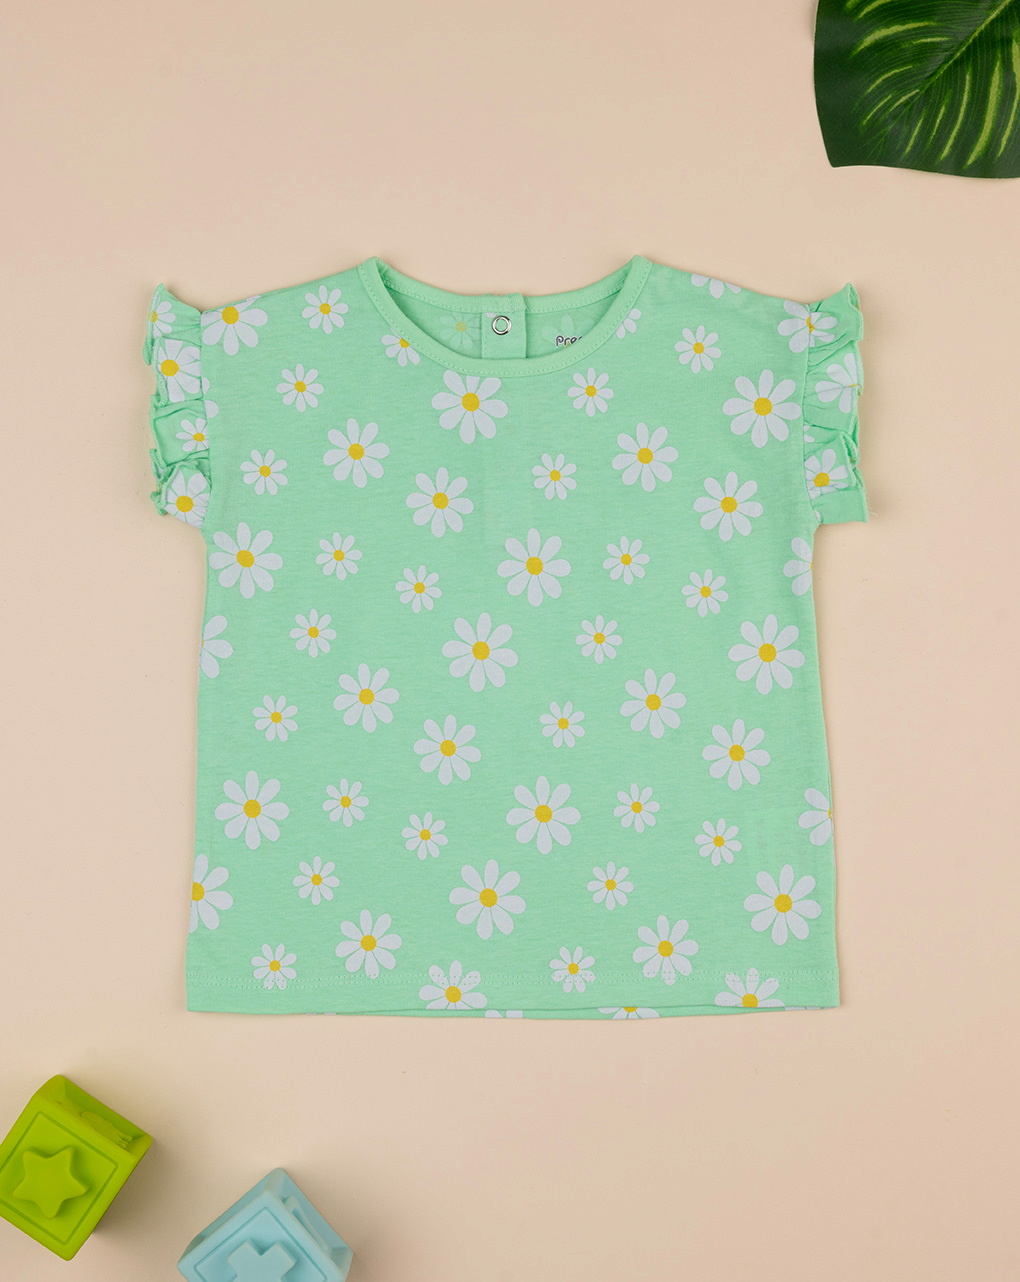 βρεφικό t-shirt πράσινο με μαργαρίτες για κορίτσι